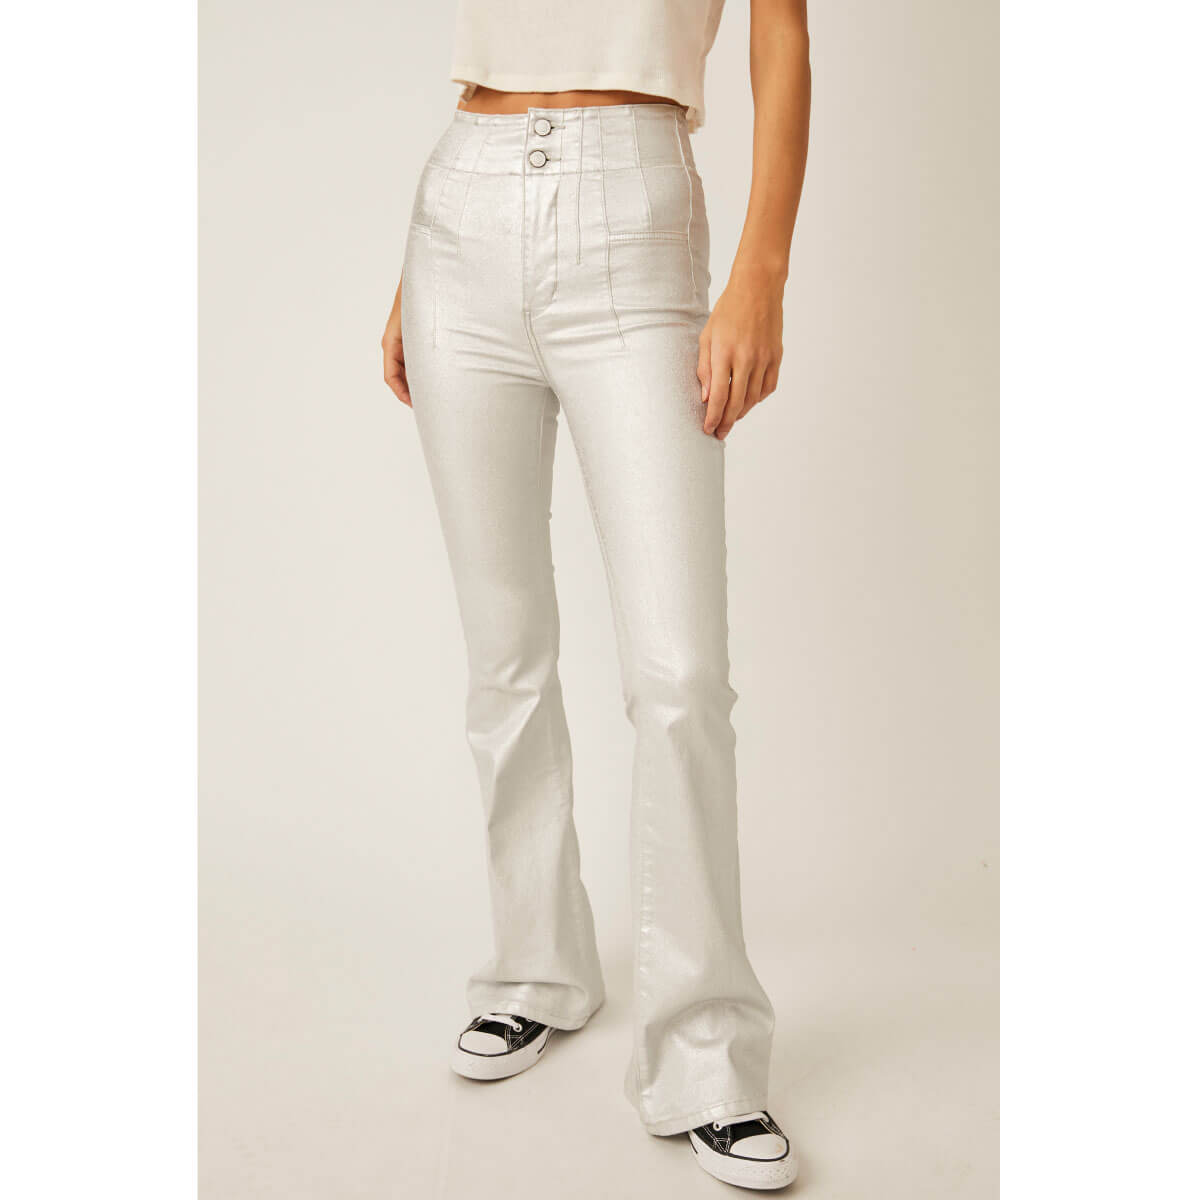 http://milkmoney.co/cdn/shop/files/Free-People-Jayde-Metallic-Flare-Jeans-silver-front-MILK-MONEY-cute-pants_1.jpg?v=1696618220